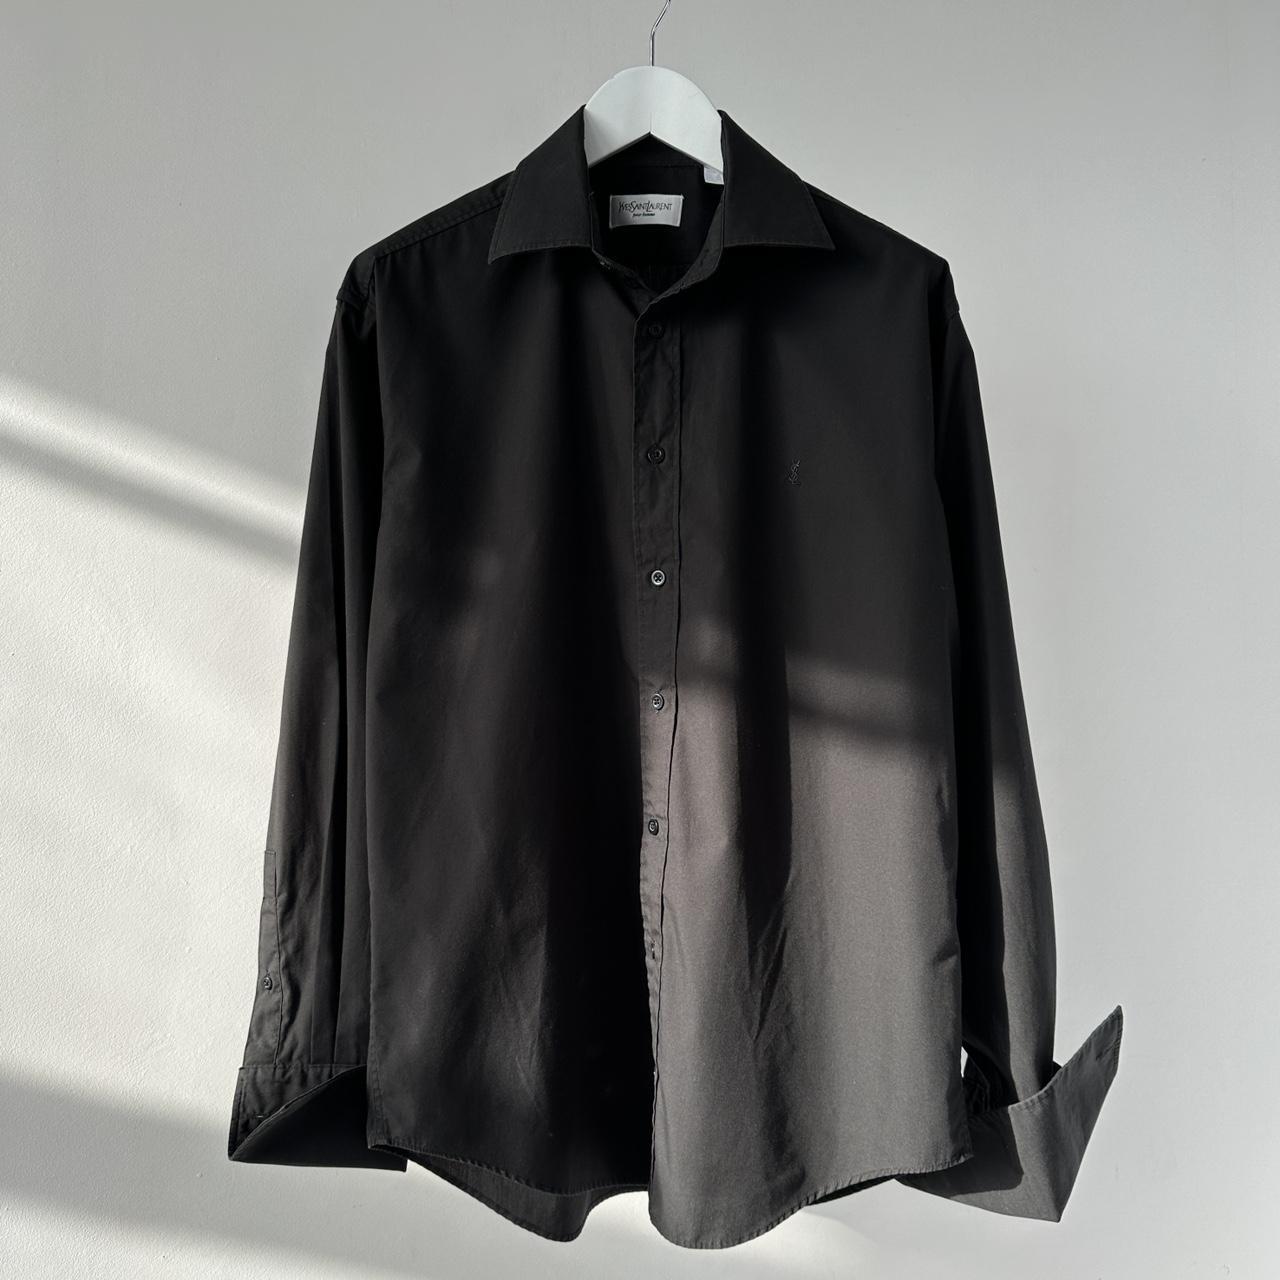 Yves Saint Laurent Men's Black Shirt | Depop